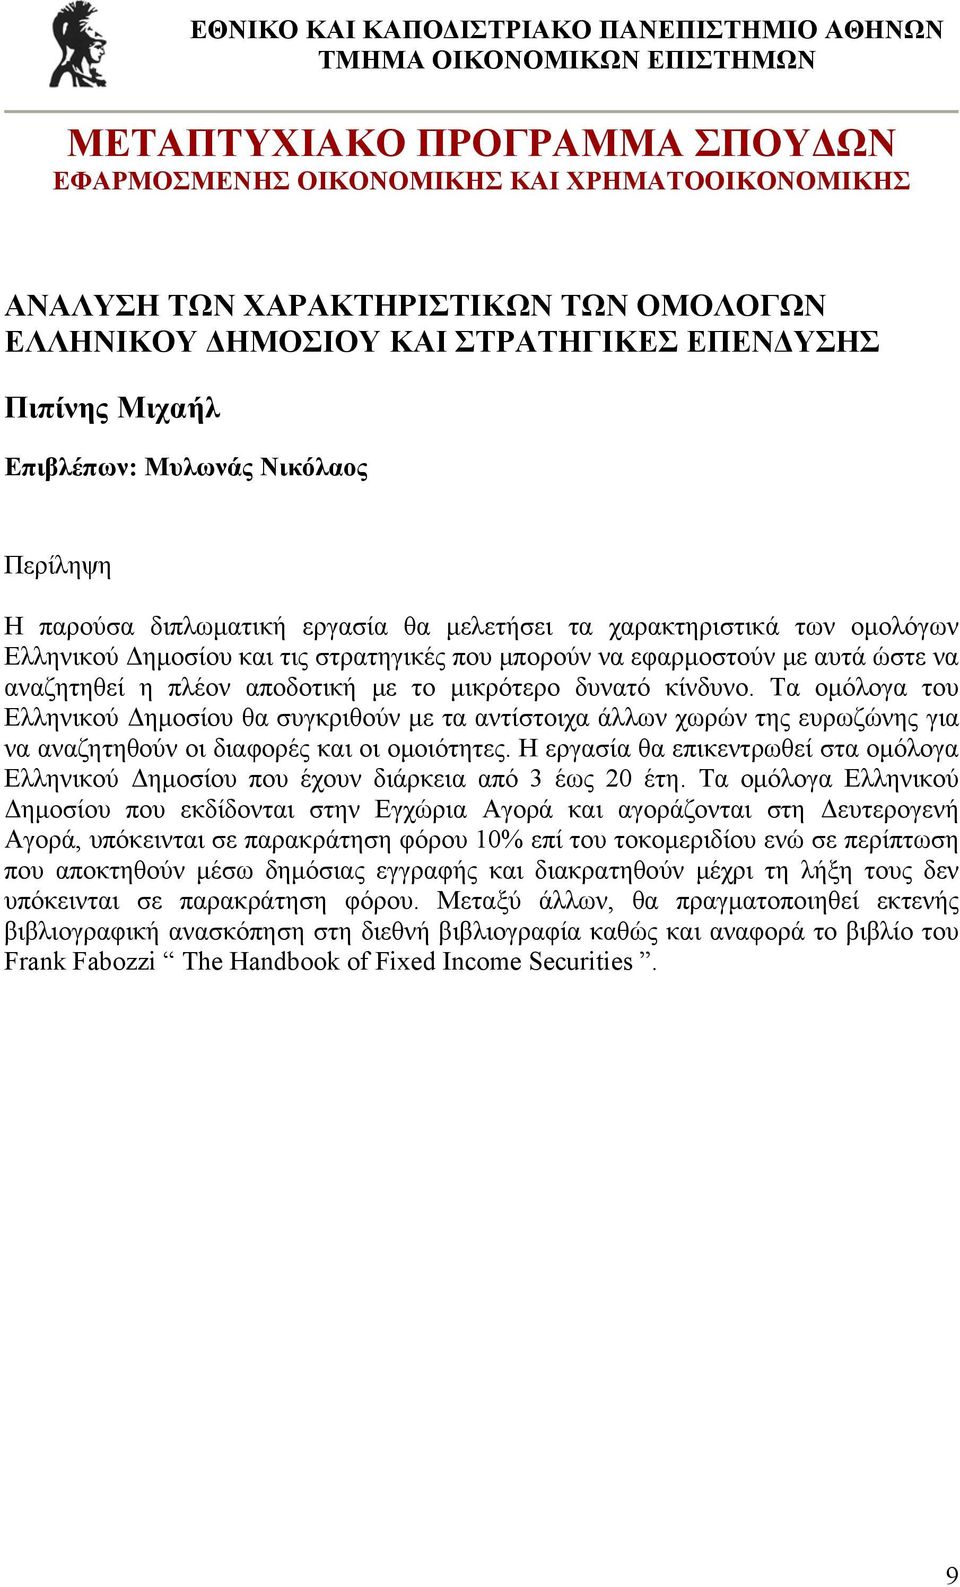 Τα ομόλογα του Ελληνικού Δημοσίου θα συγκριθούν με τα αντίστοιχα άλλων χωρών της ευρωζώνης για να αναζητηθούν οι διαφορές και οι ομοιότητες.